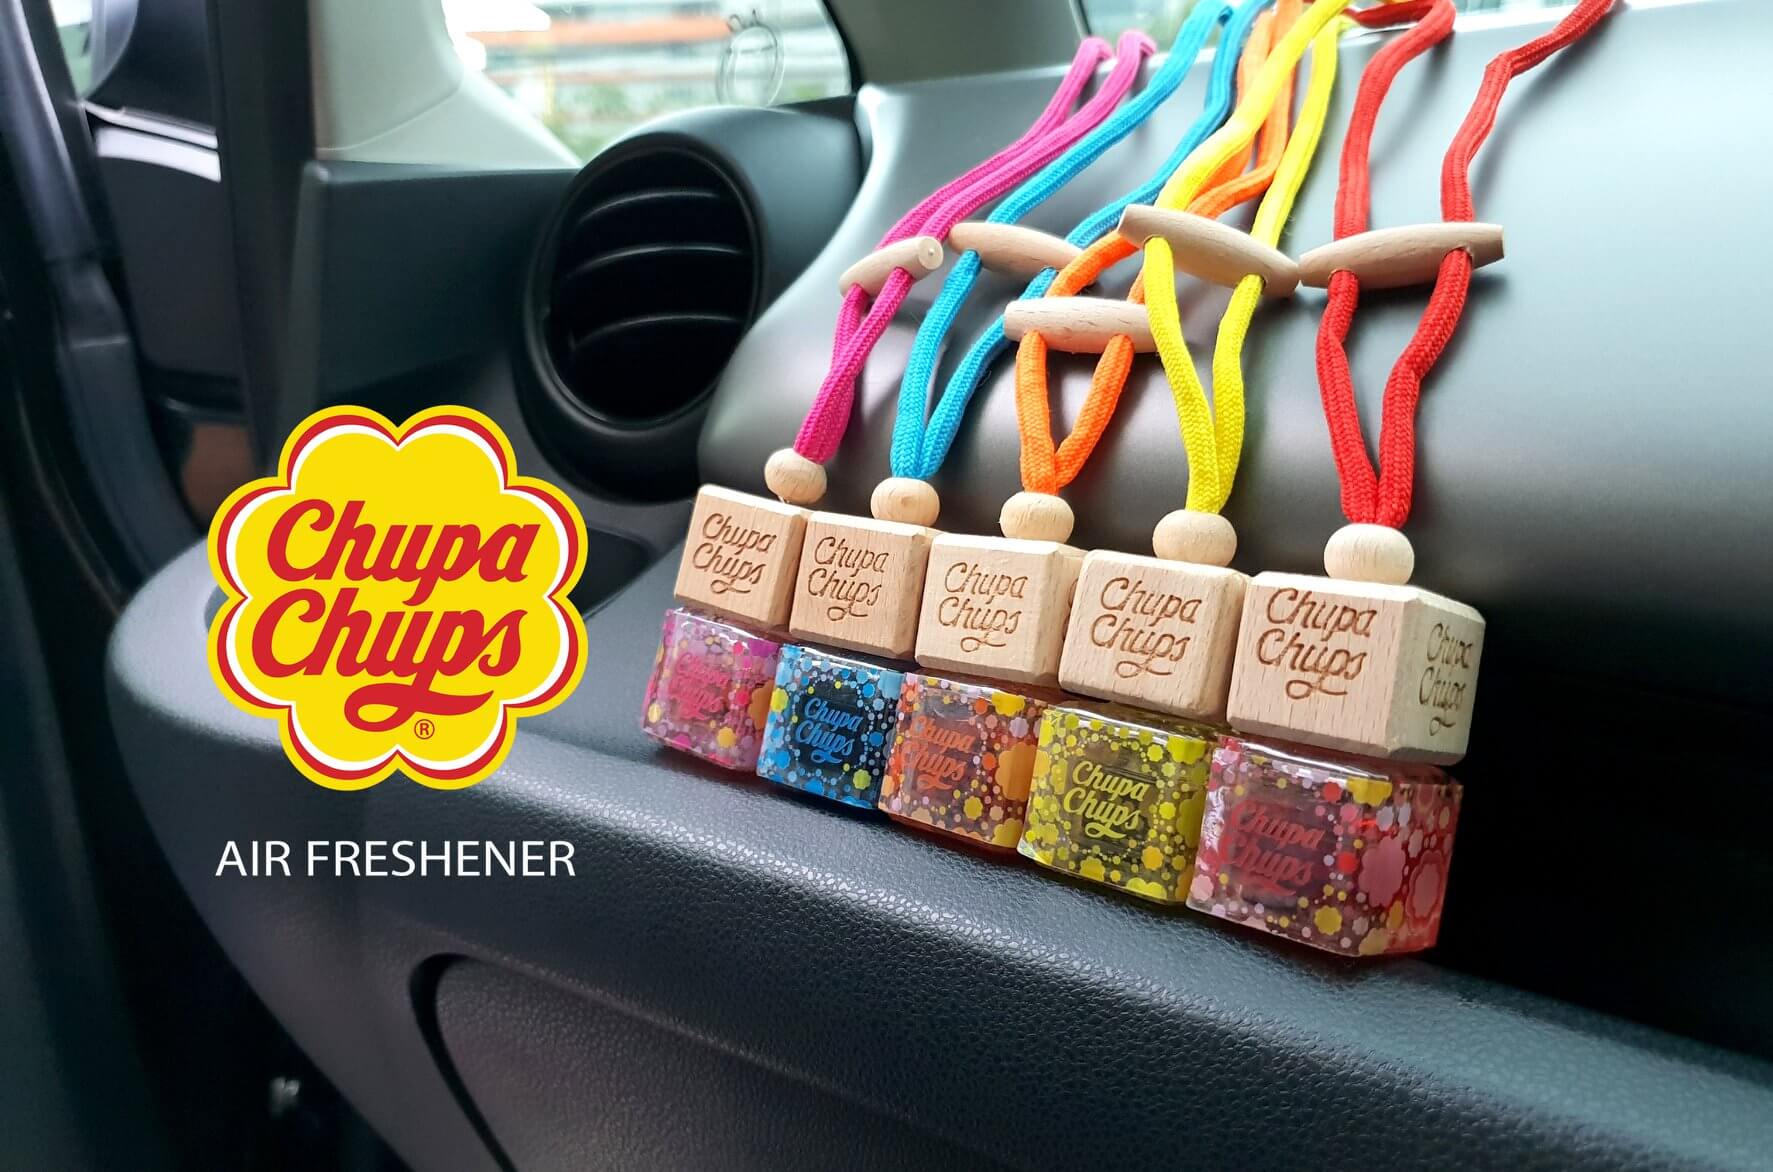 Chupa Chups Air Freshener น้ำหอมปรับอากาศอโรม่า ไม่เป็นอันตรายต่อระบบทำความเย็น ใช้ได้กับทุกพื้นที่ เช่น ในรถยนต์ กระโปรงหลังรถยนต์ ห้องนอน ห้องน้ำ ตู้เสื้อผ้า ตู้รองเท้ แพ็คเก็จจิ้งสีสันสดใส สวยงาม รูปลักษณ์ขนาดกระทัดรัด ดูเก๋ เท่ห์ทันสมัย 